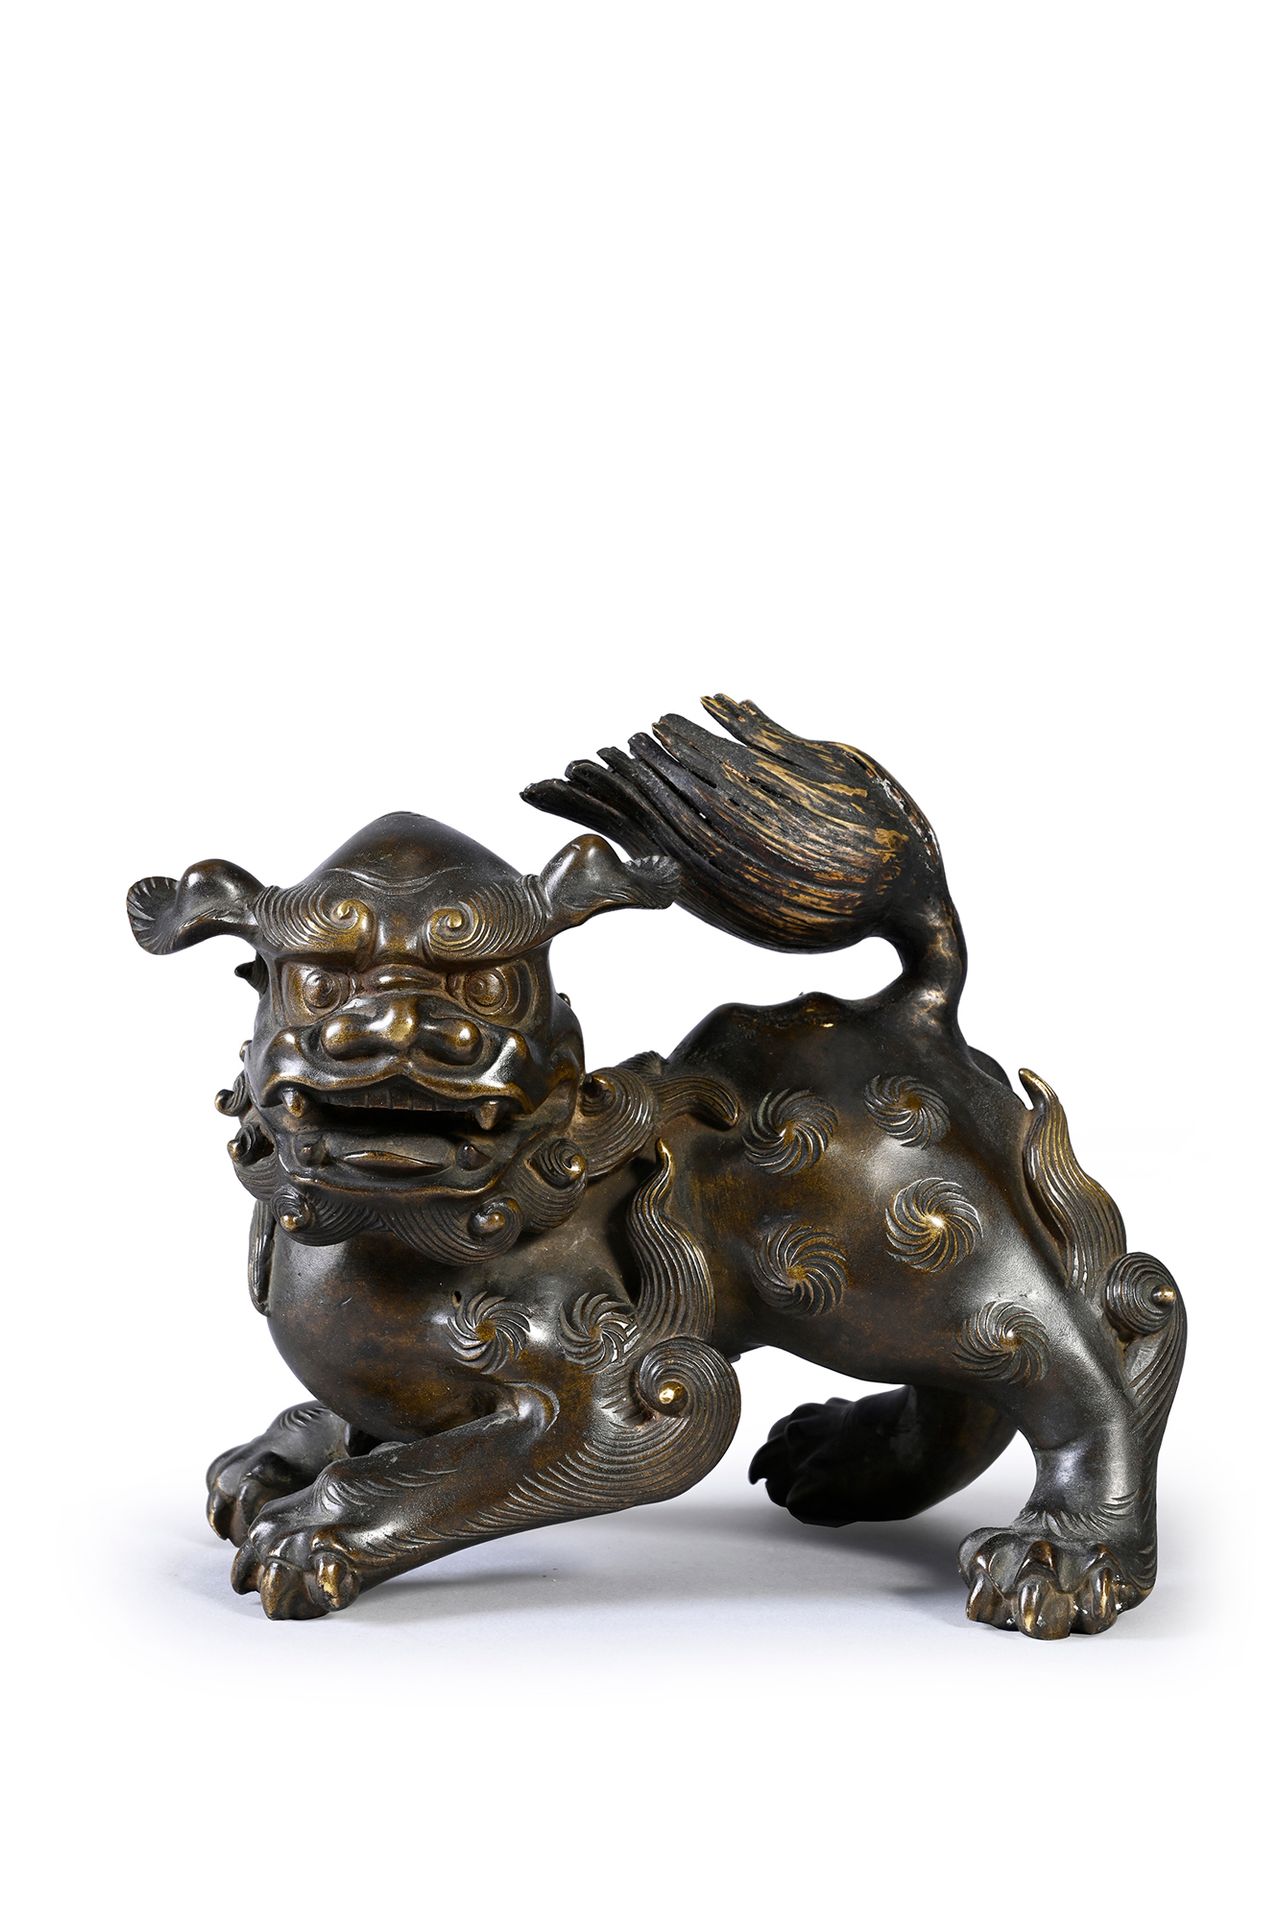 JAPON, XIXe siècle 棕色铜质的石狮
15 x 18 x 11厘米